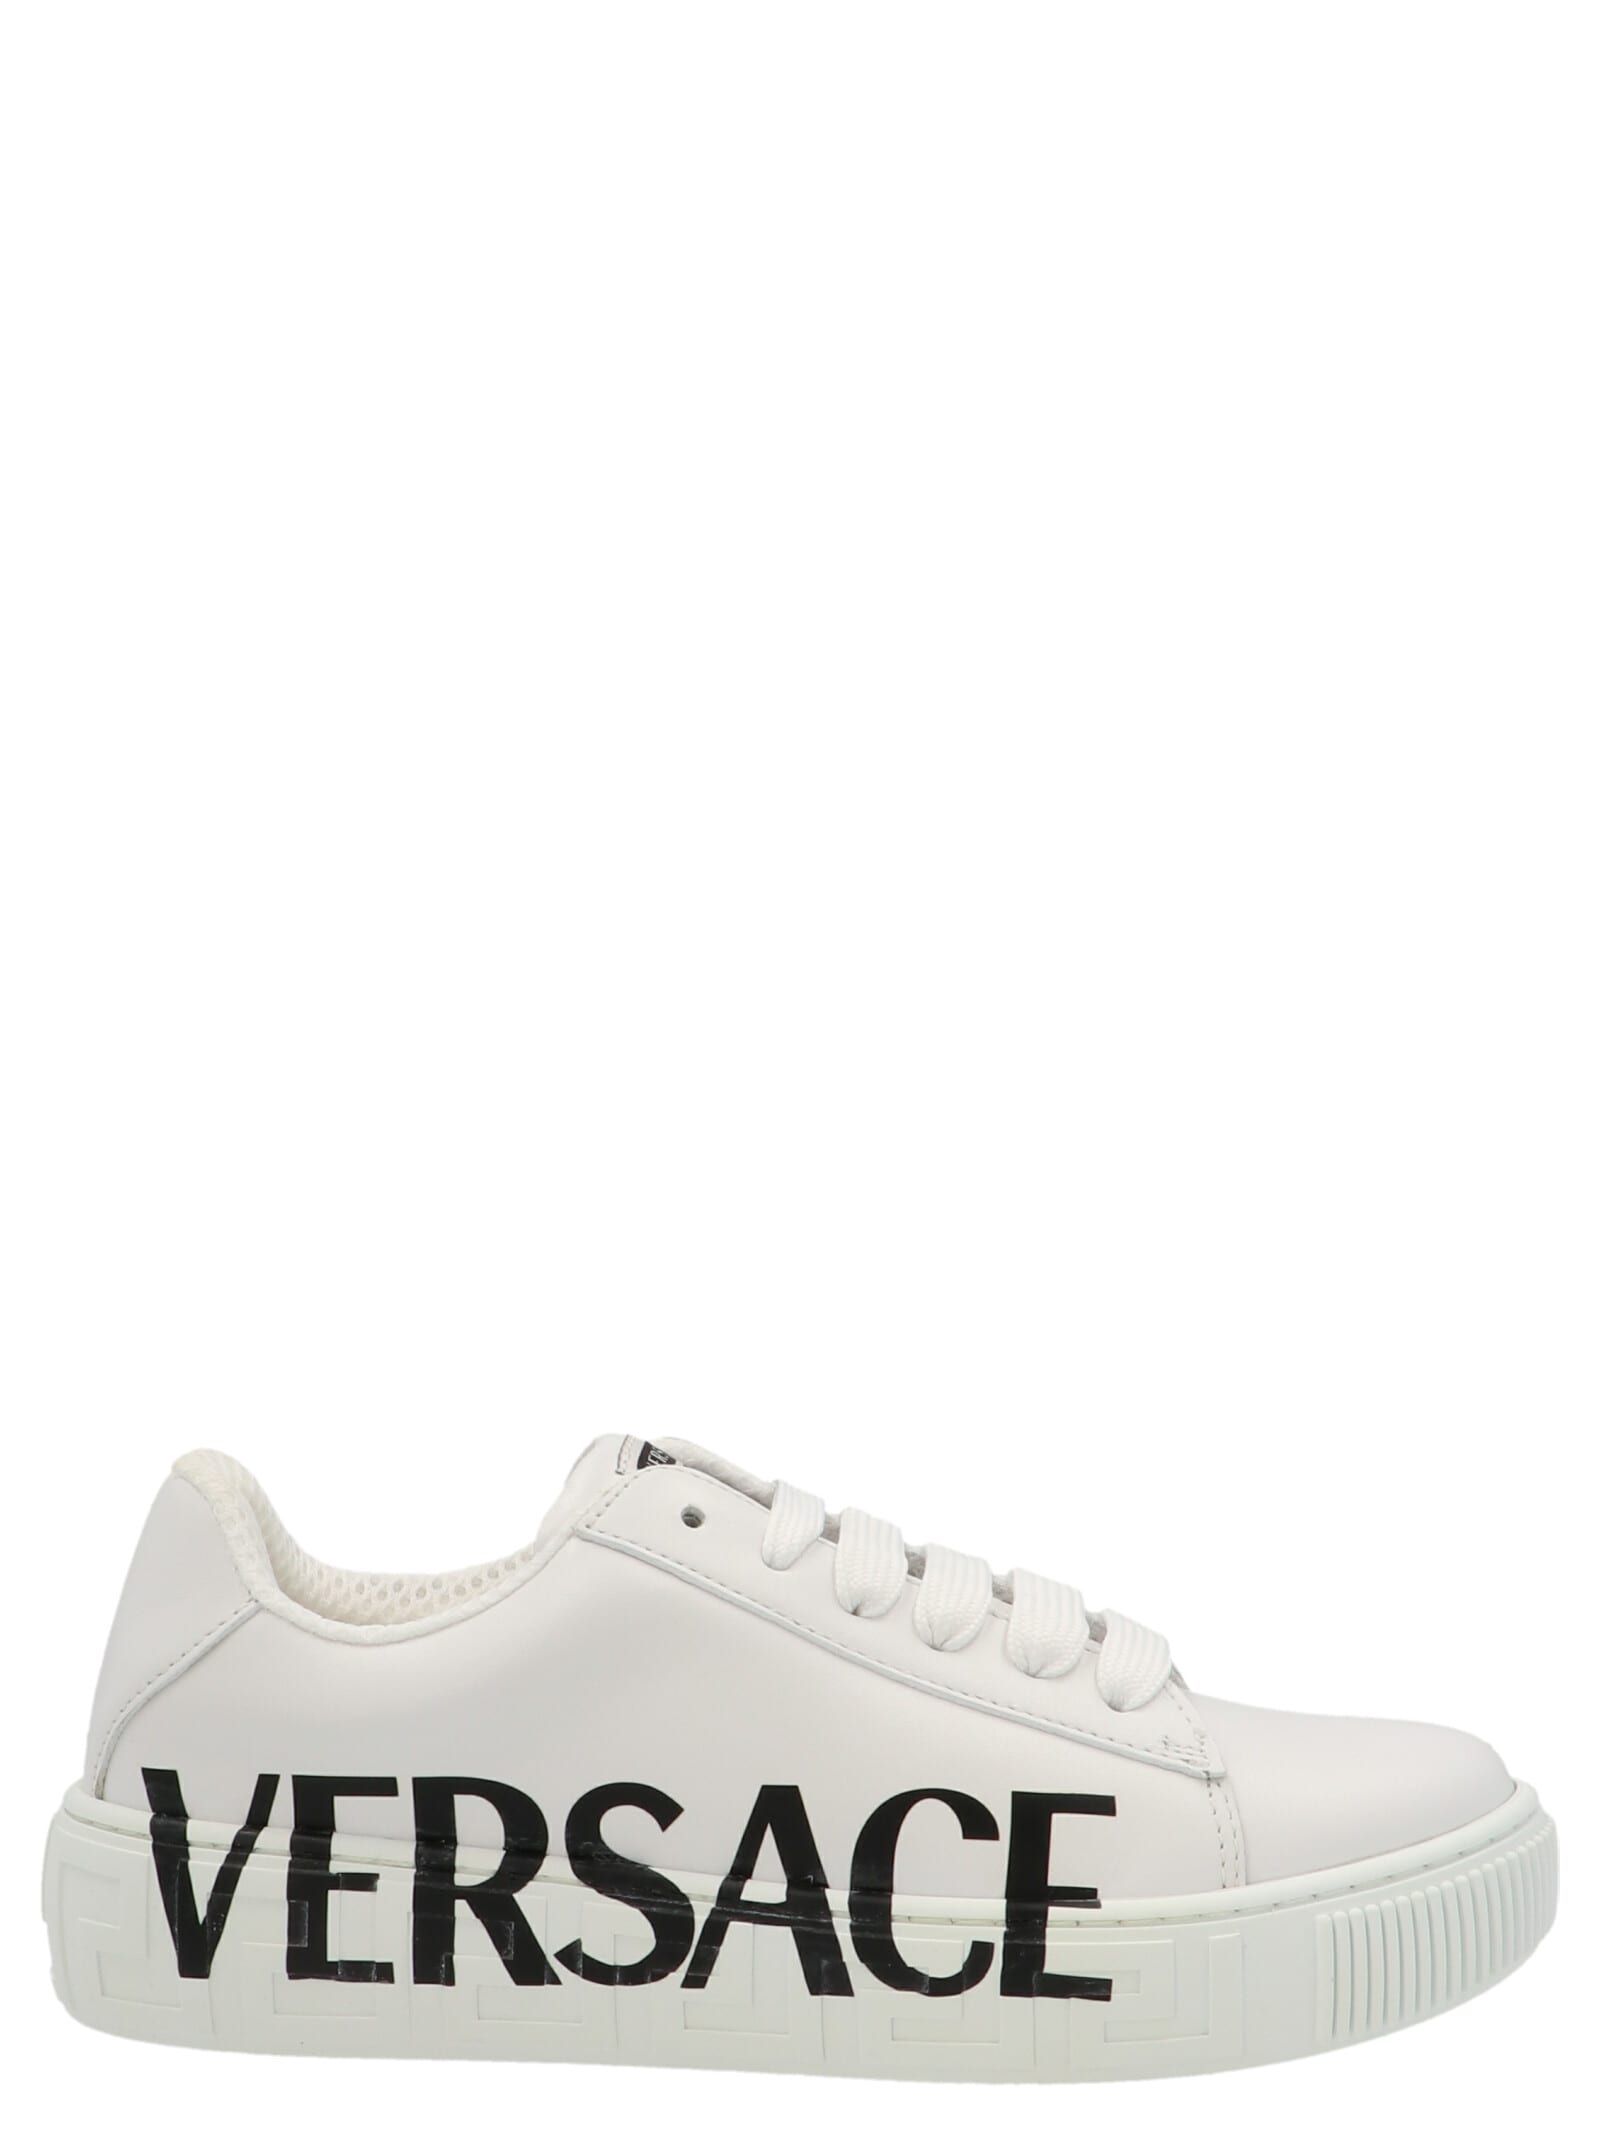 Young Versace la Greca Shoes